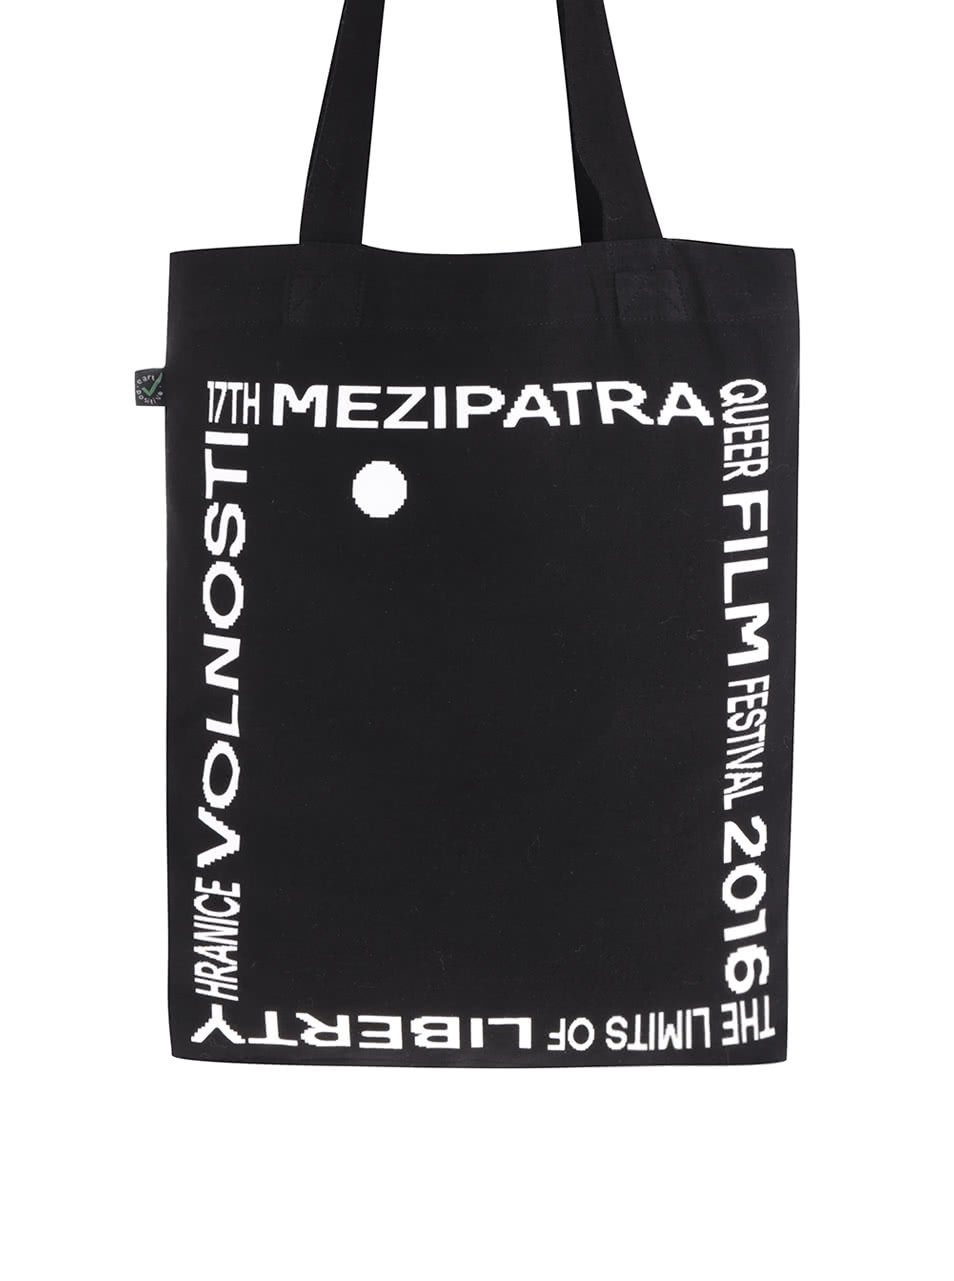 "Dobrá" černá taška pro Mezipatra